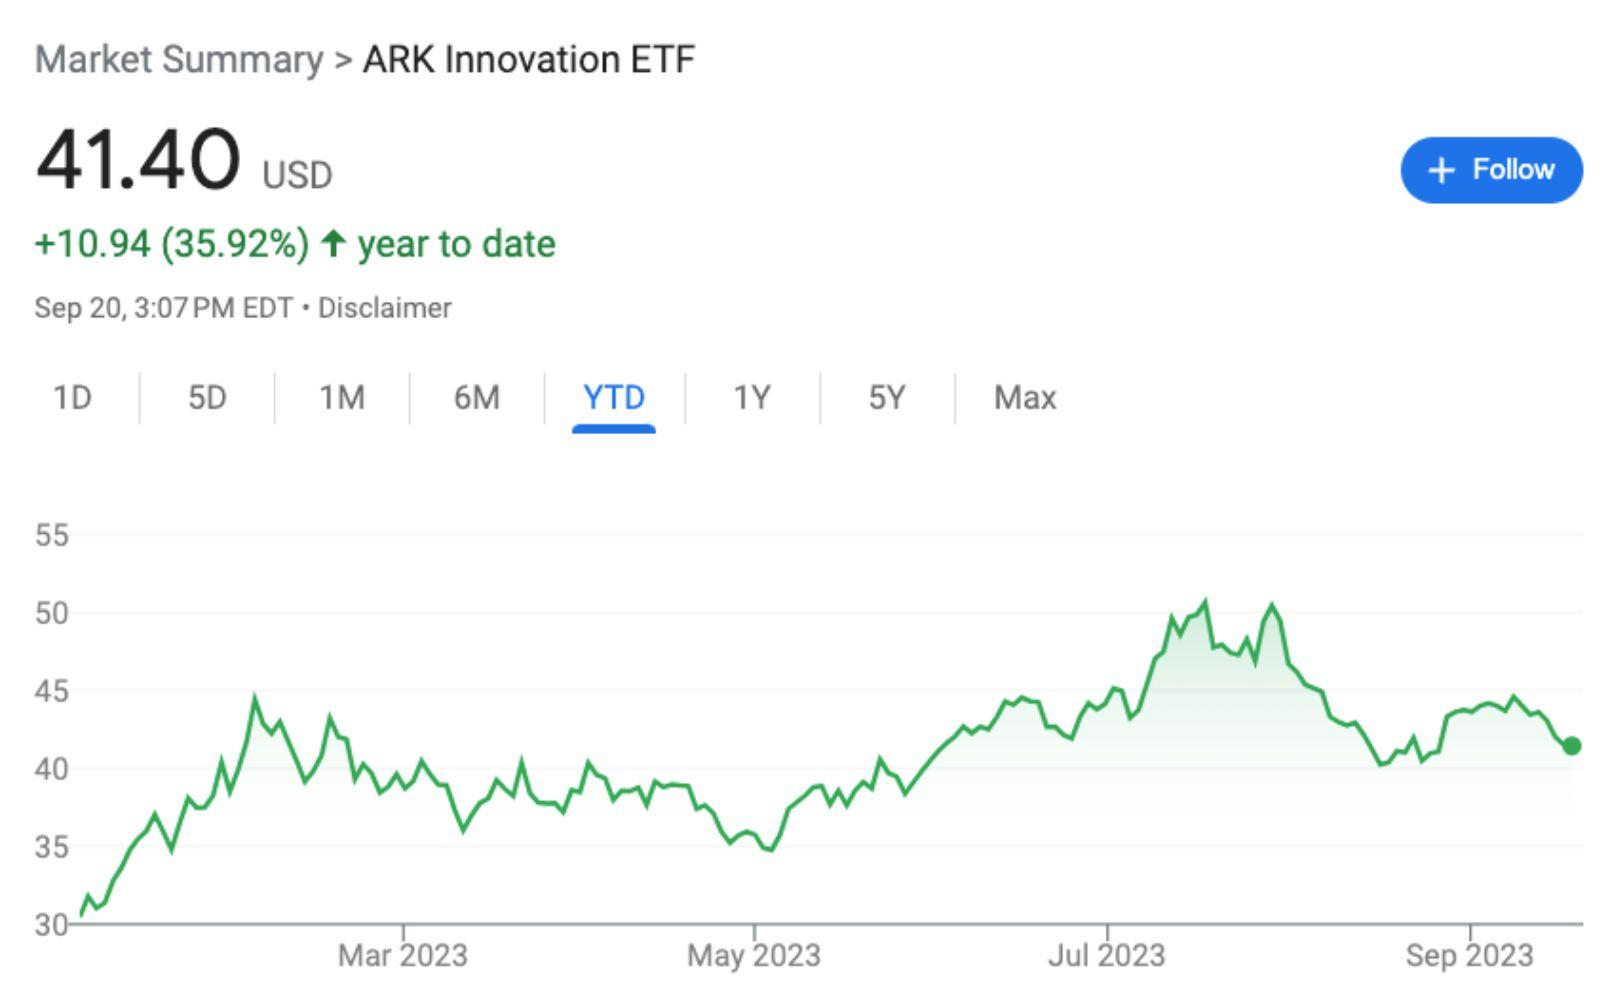 ARK Innovation ETF